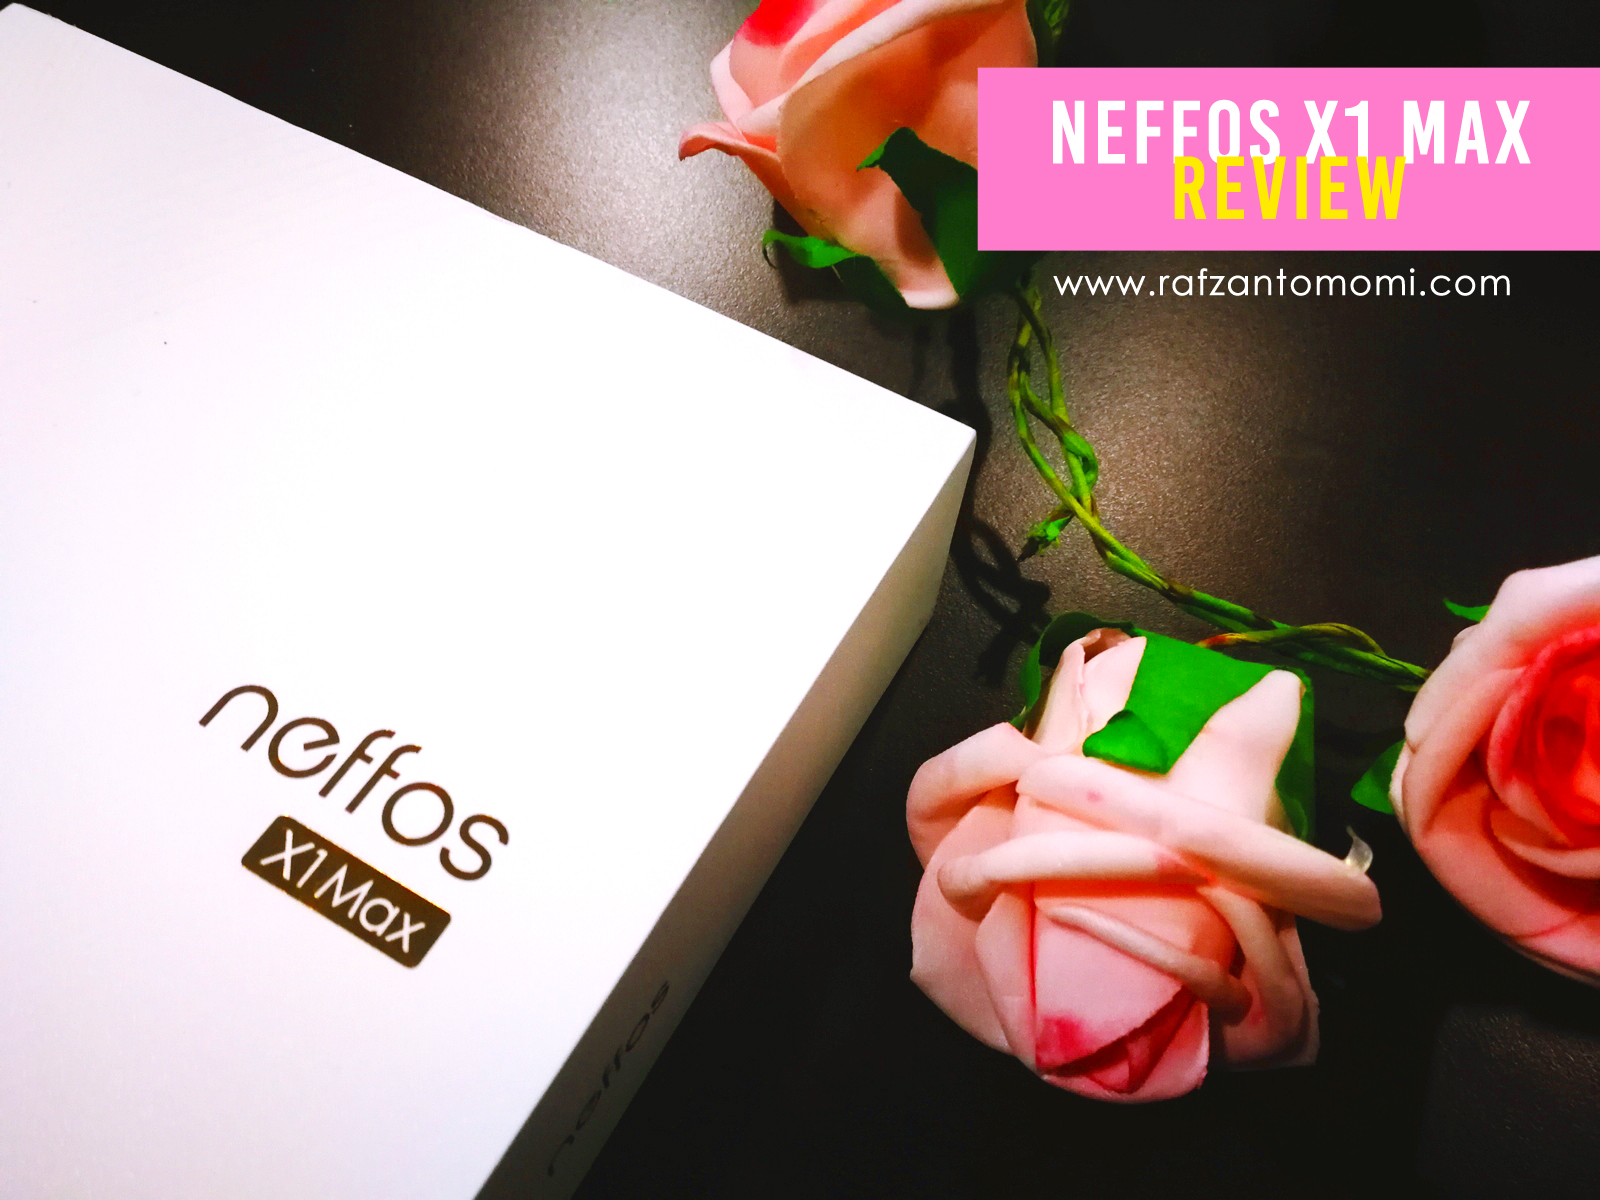 Neffos X1 Max - Peranti Yang 'Solid', Memenuhi Keperluan Harian Anda